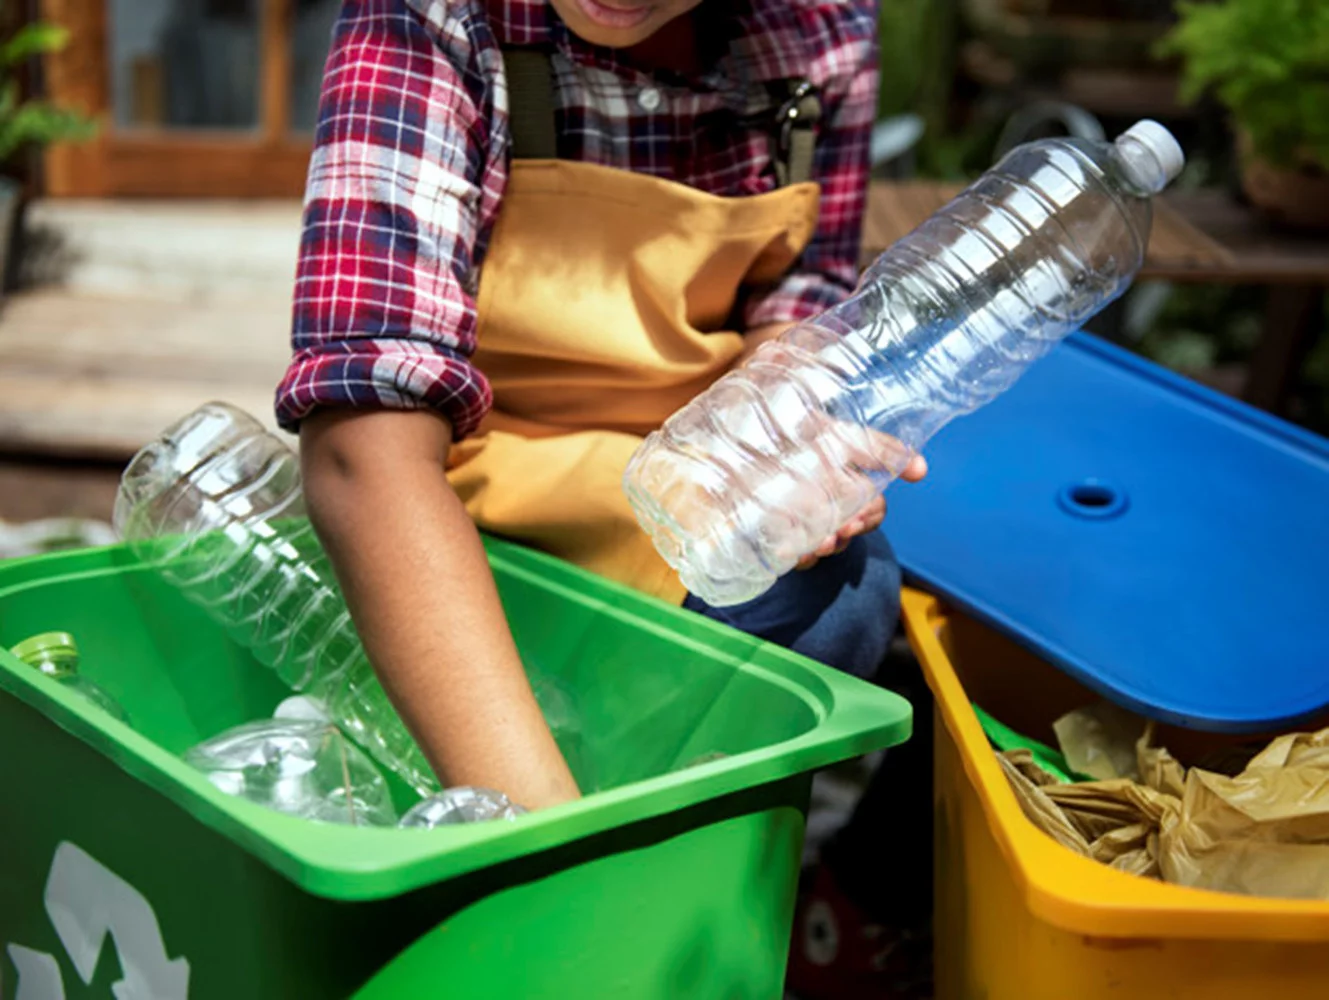 Jak zadbać o właściwy recykling w domowych warunkach? Praktyczne porady